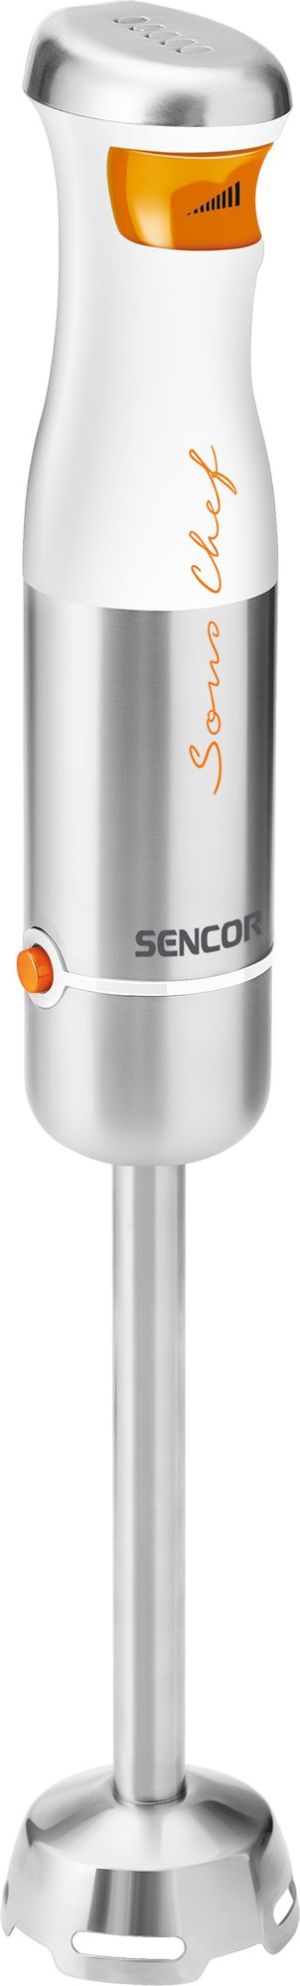 Blender Sencor BLENDER RĘCZNY SHB 4450WH () - RT191 530000090 1